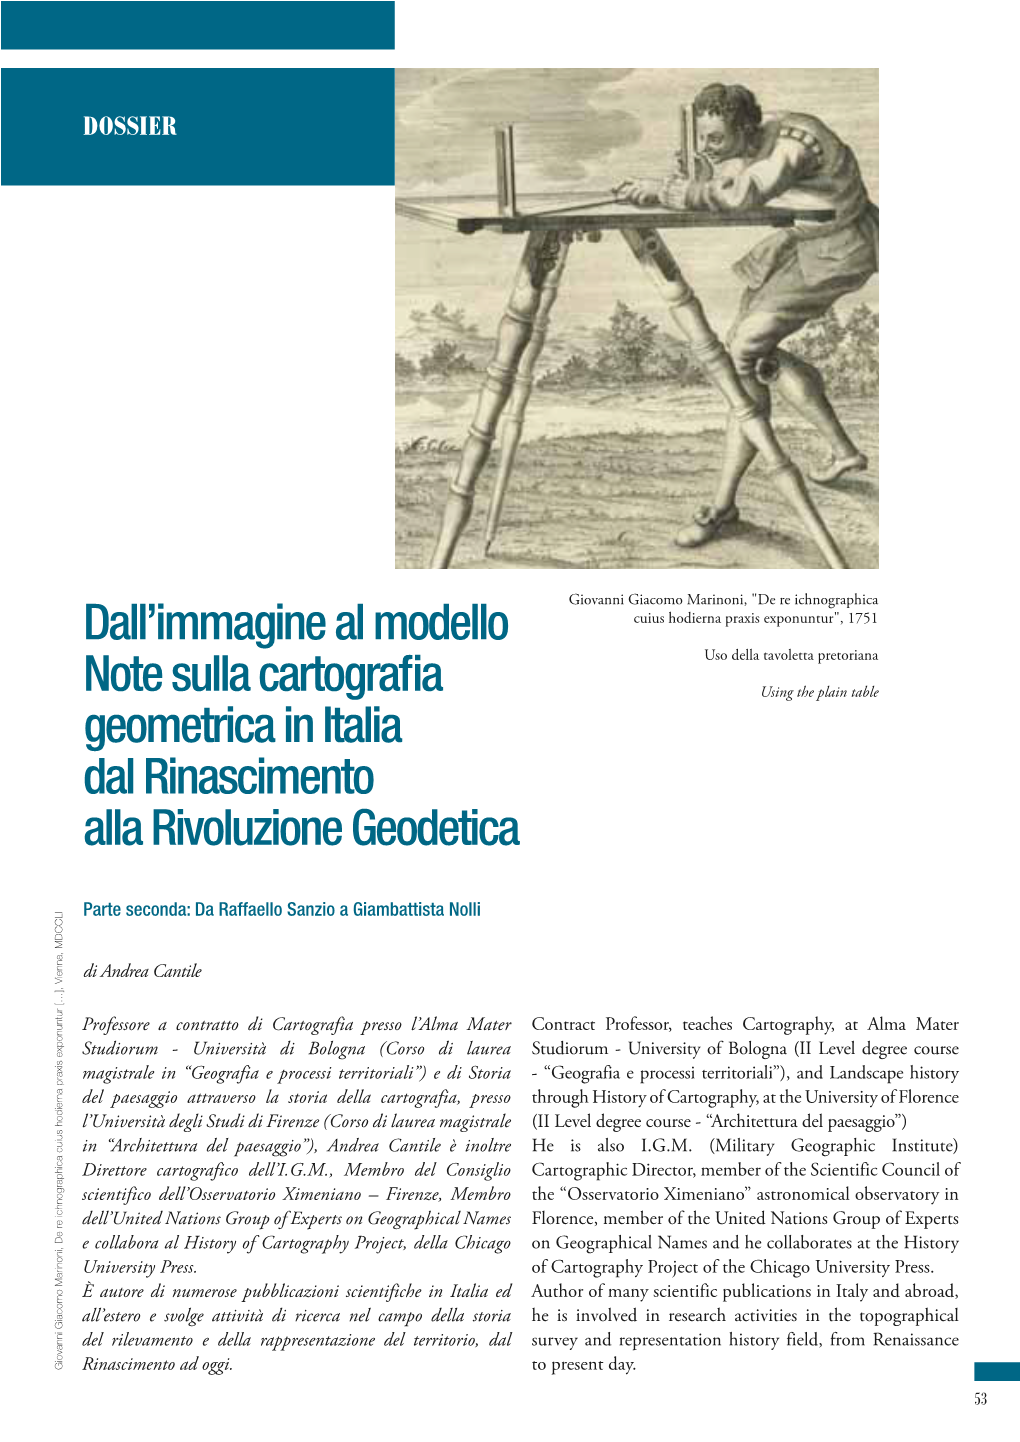 Dall'immagine Al Modello Note Sulla Cartografia Geometrica in Italia Dal Rinascimento Alla Rivoluzione Geodetica